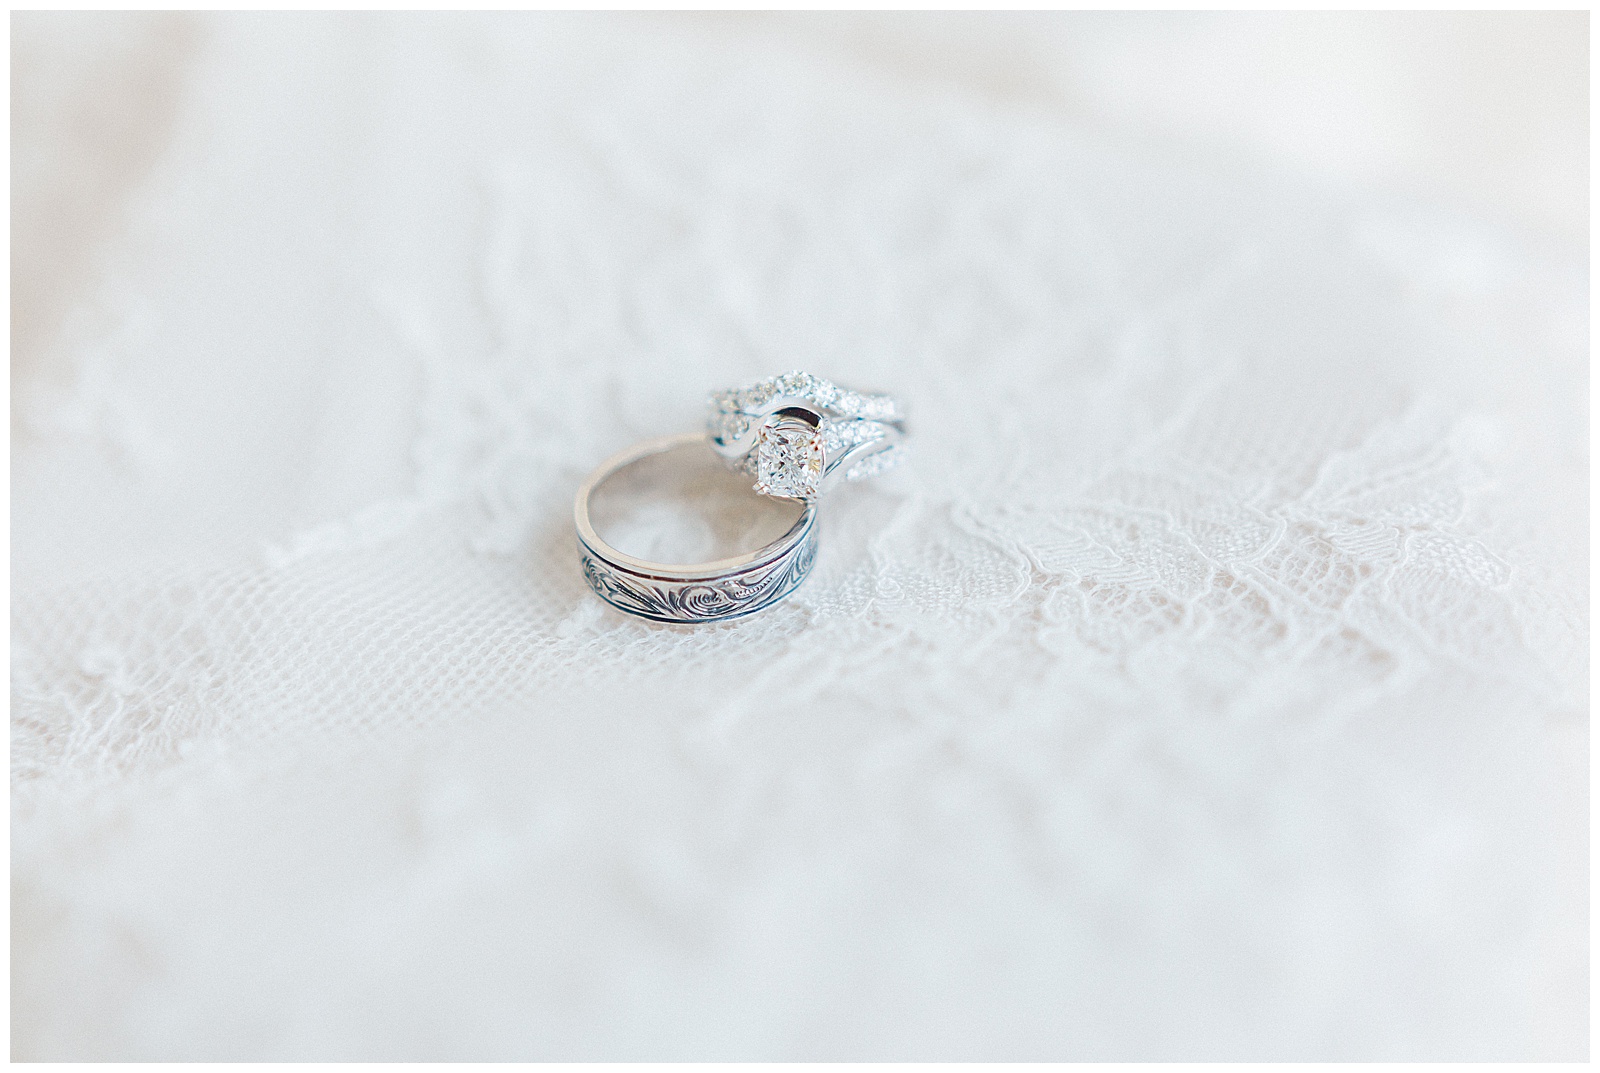 wedding ring on lace dress detail shot